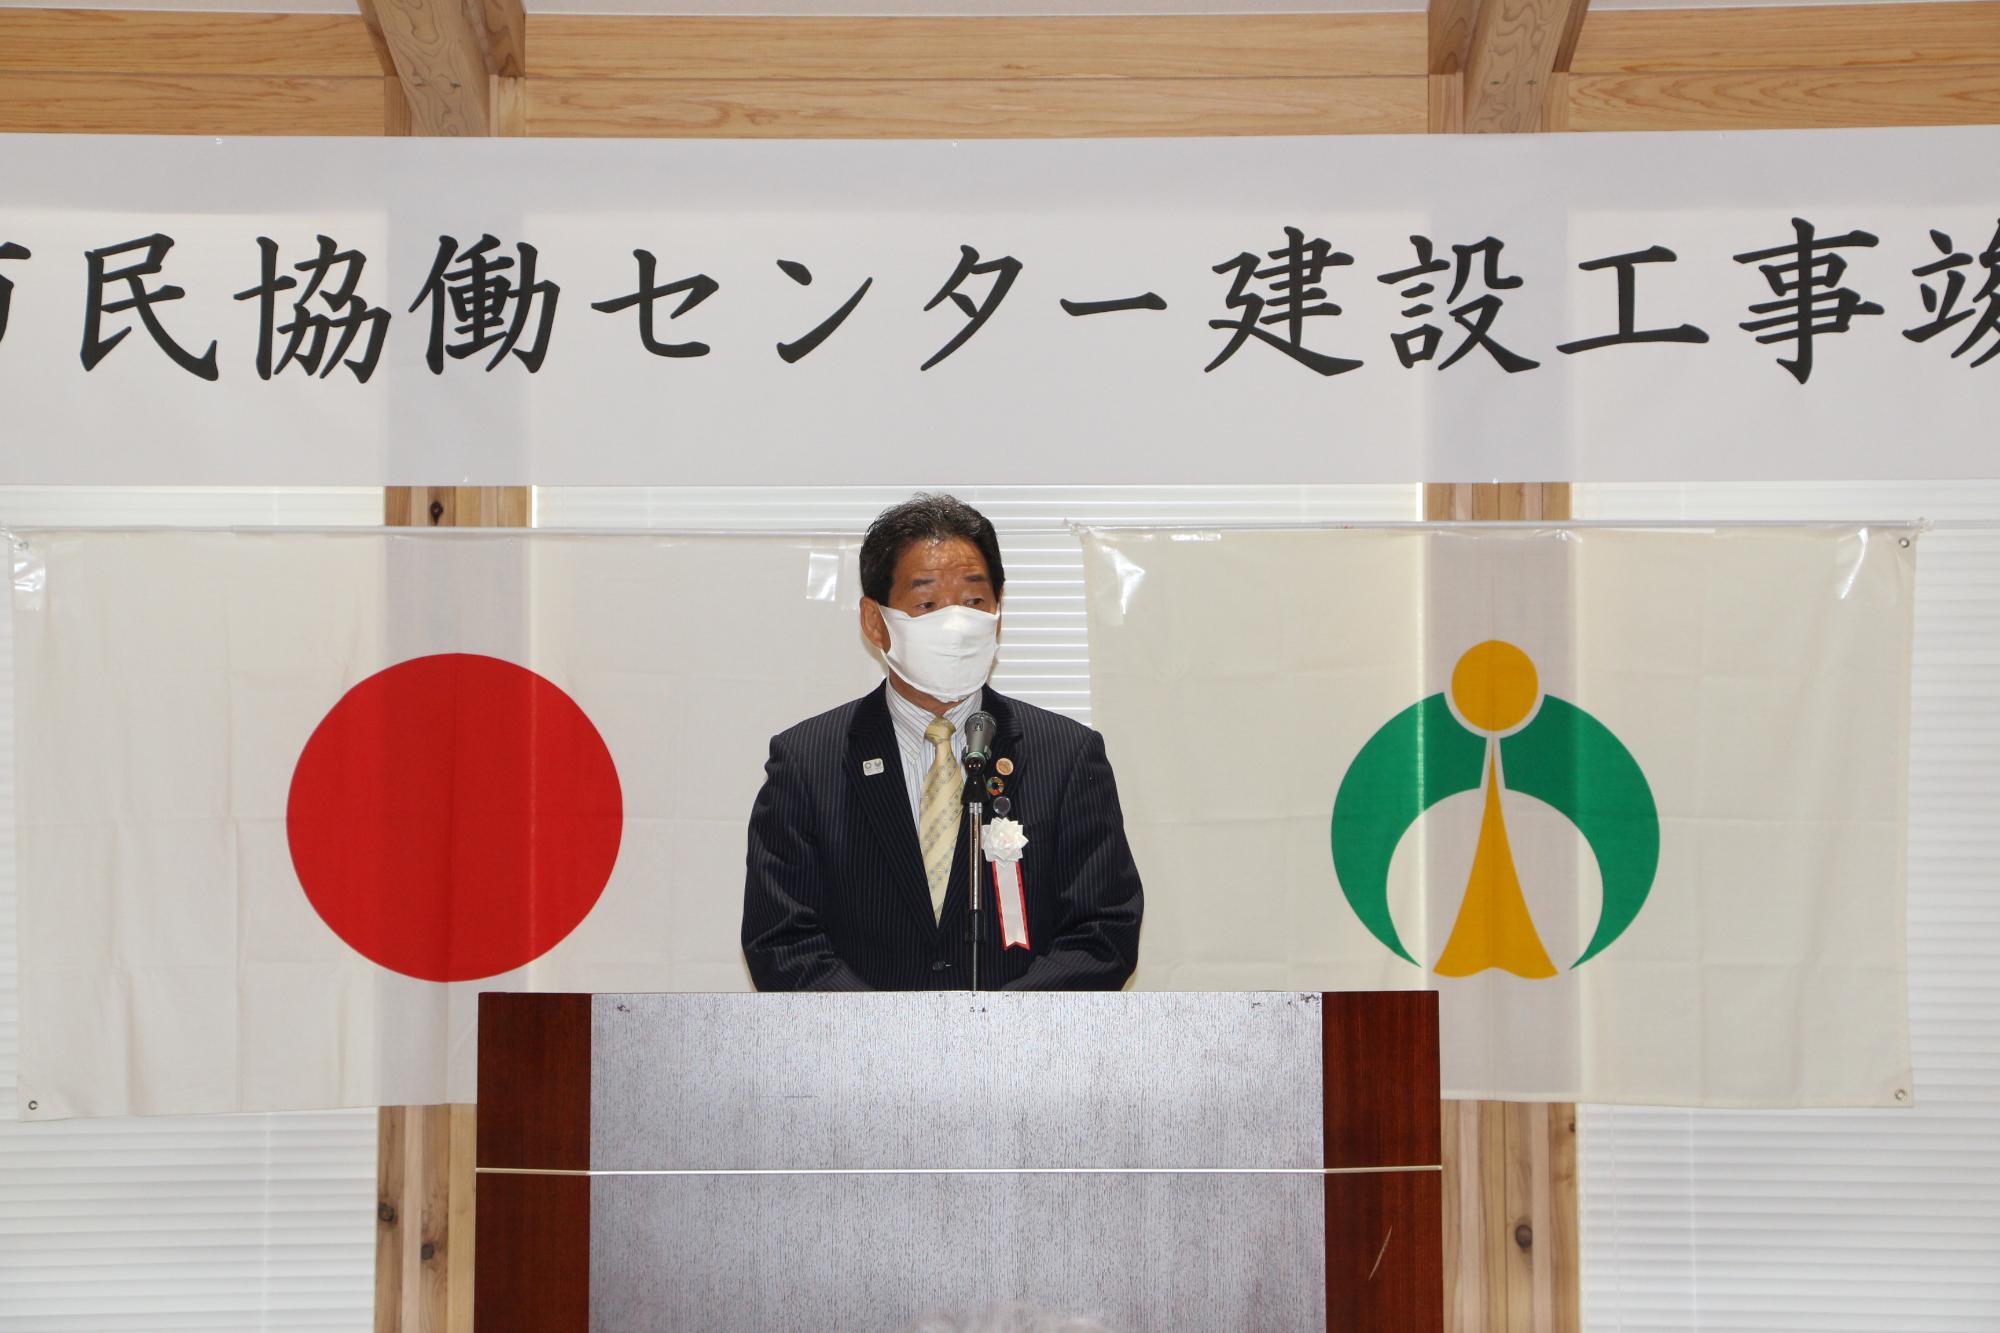 マスクをした福元市長が演台で竣工式の挨拶をしている写真